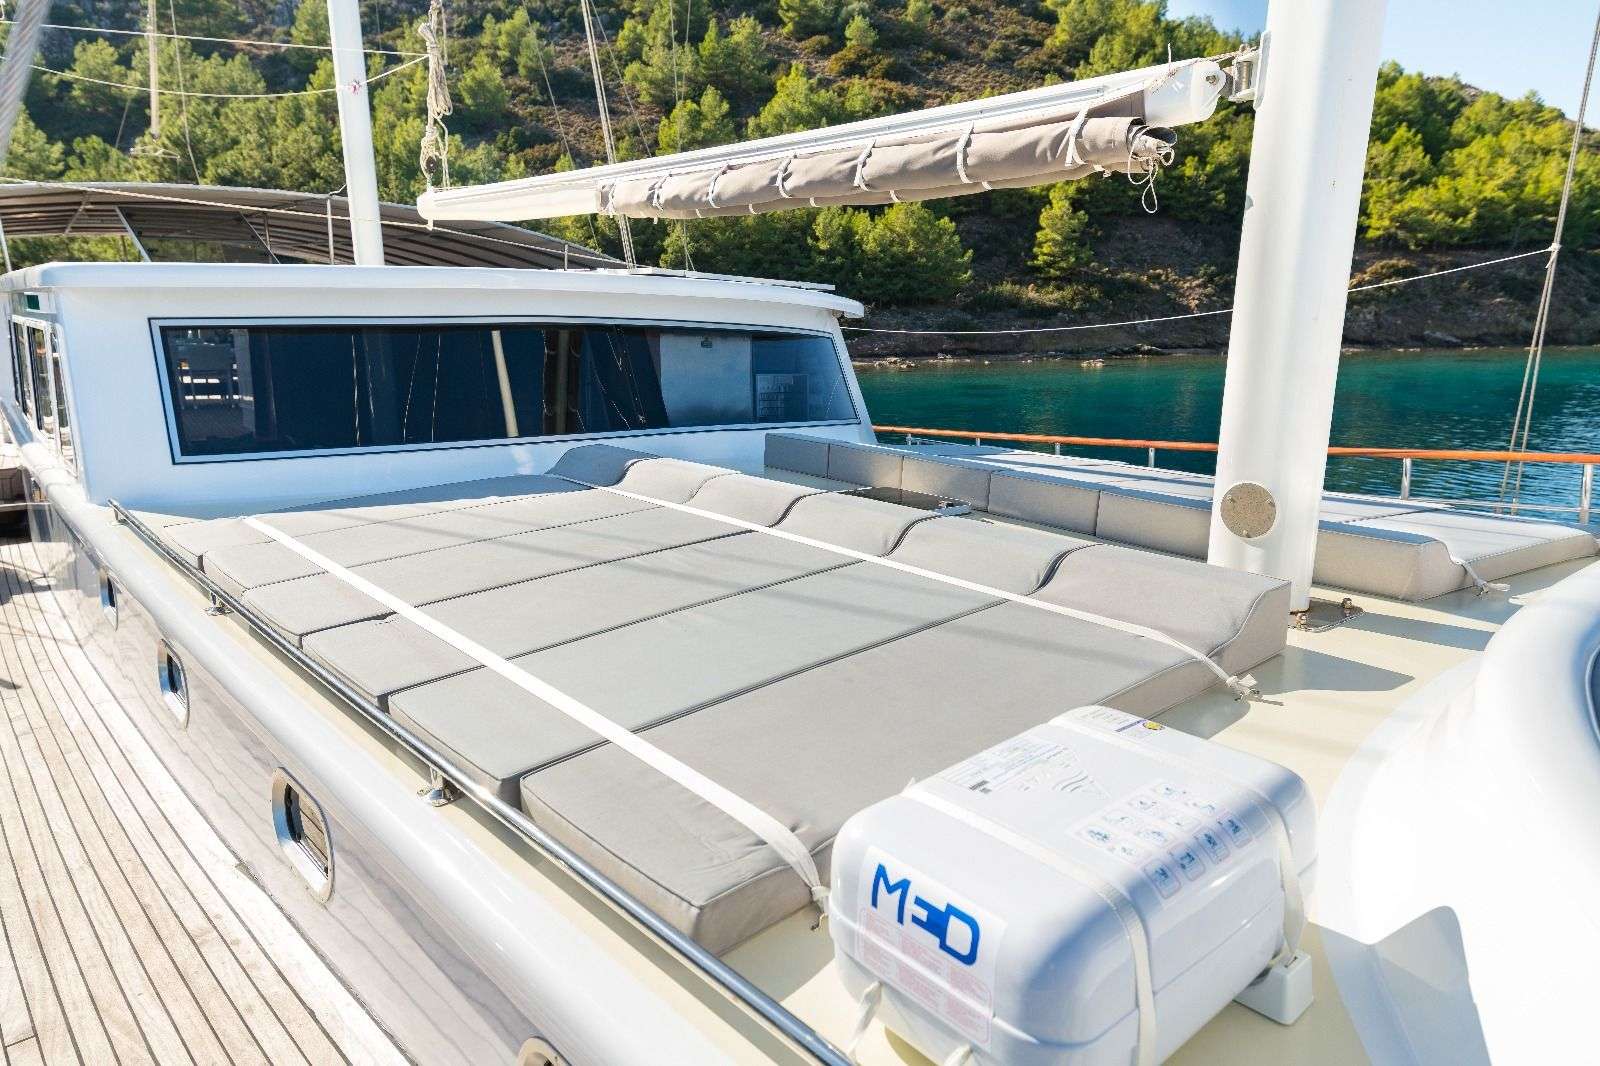 koray ege - Yacht Charter Göcek & Boat hire in Greece & Turkey 3